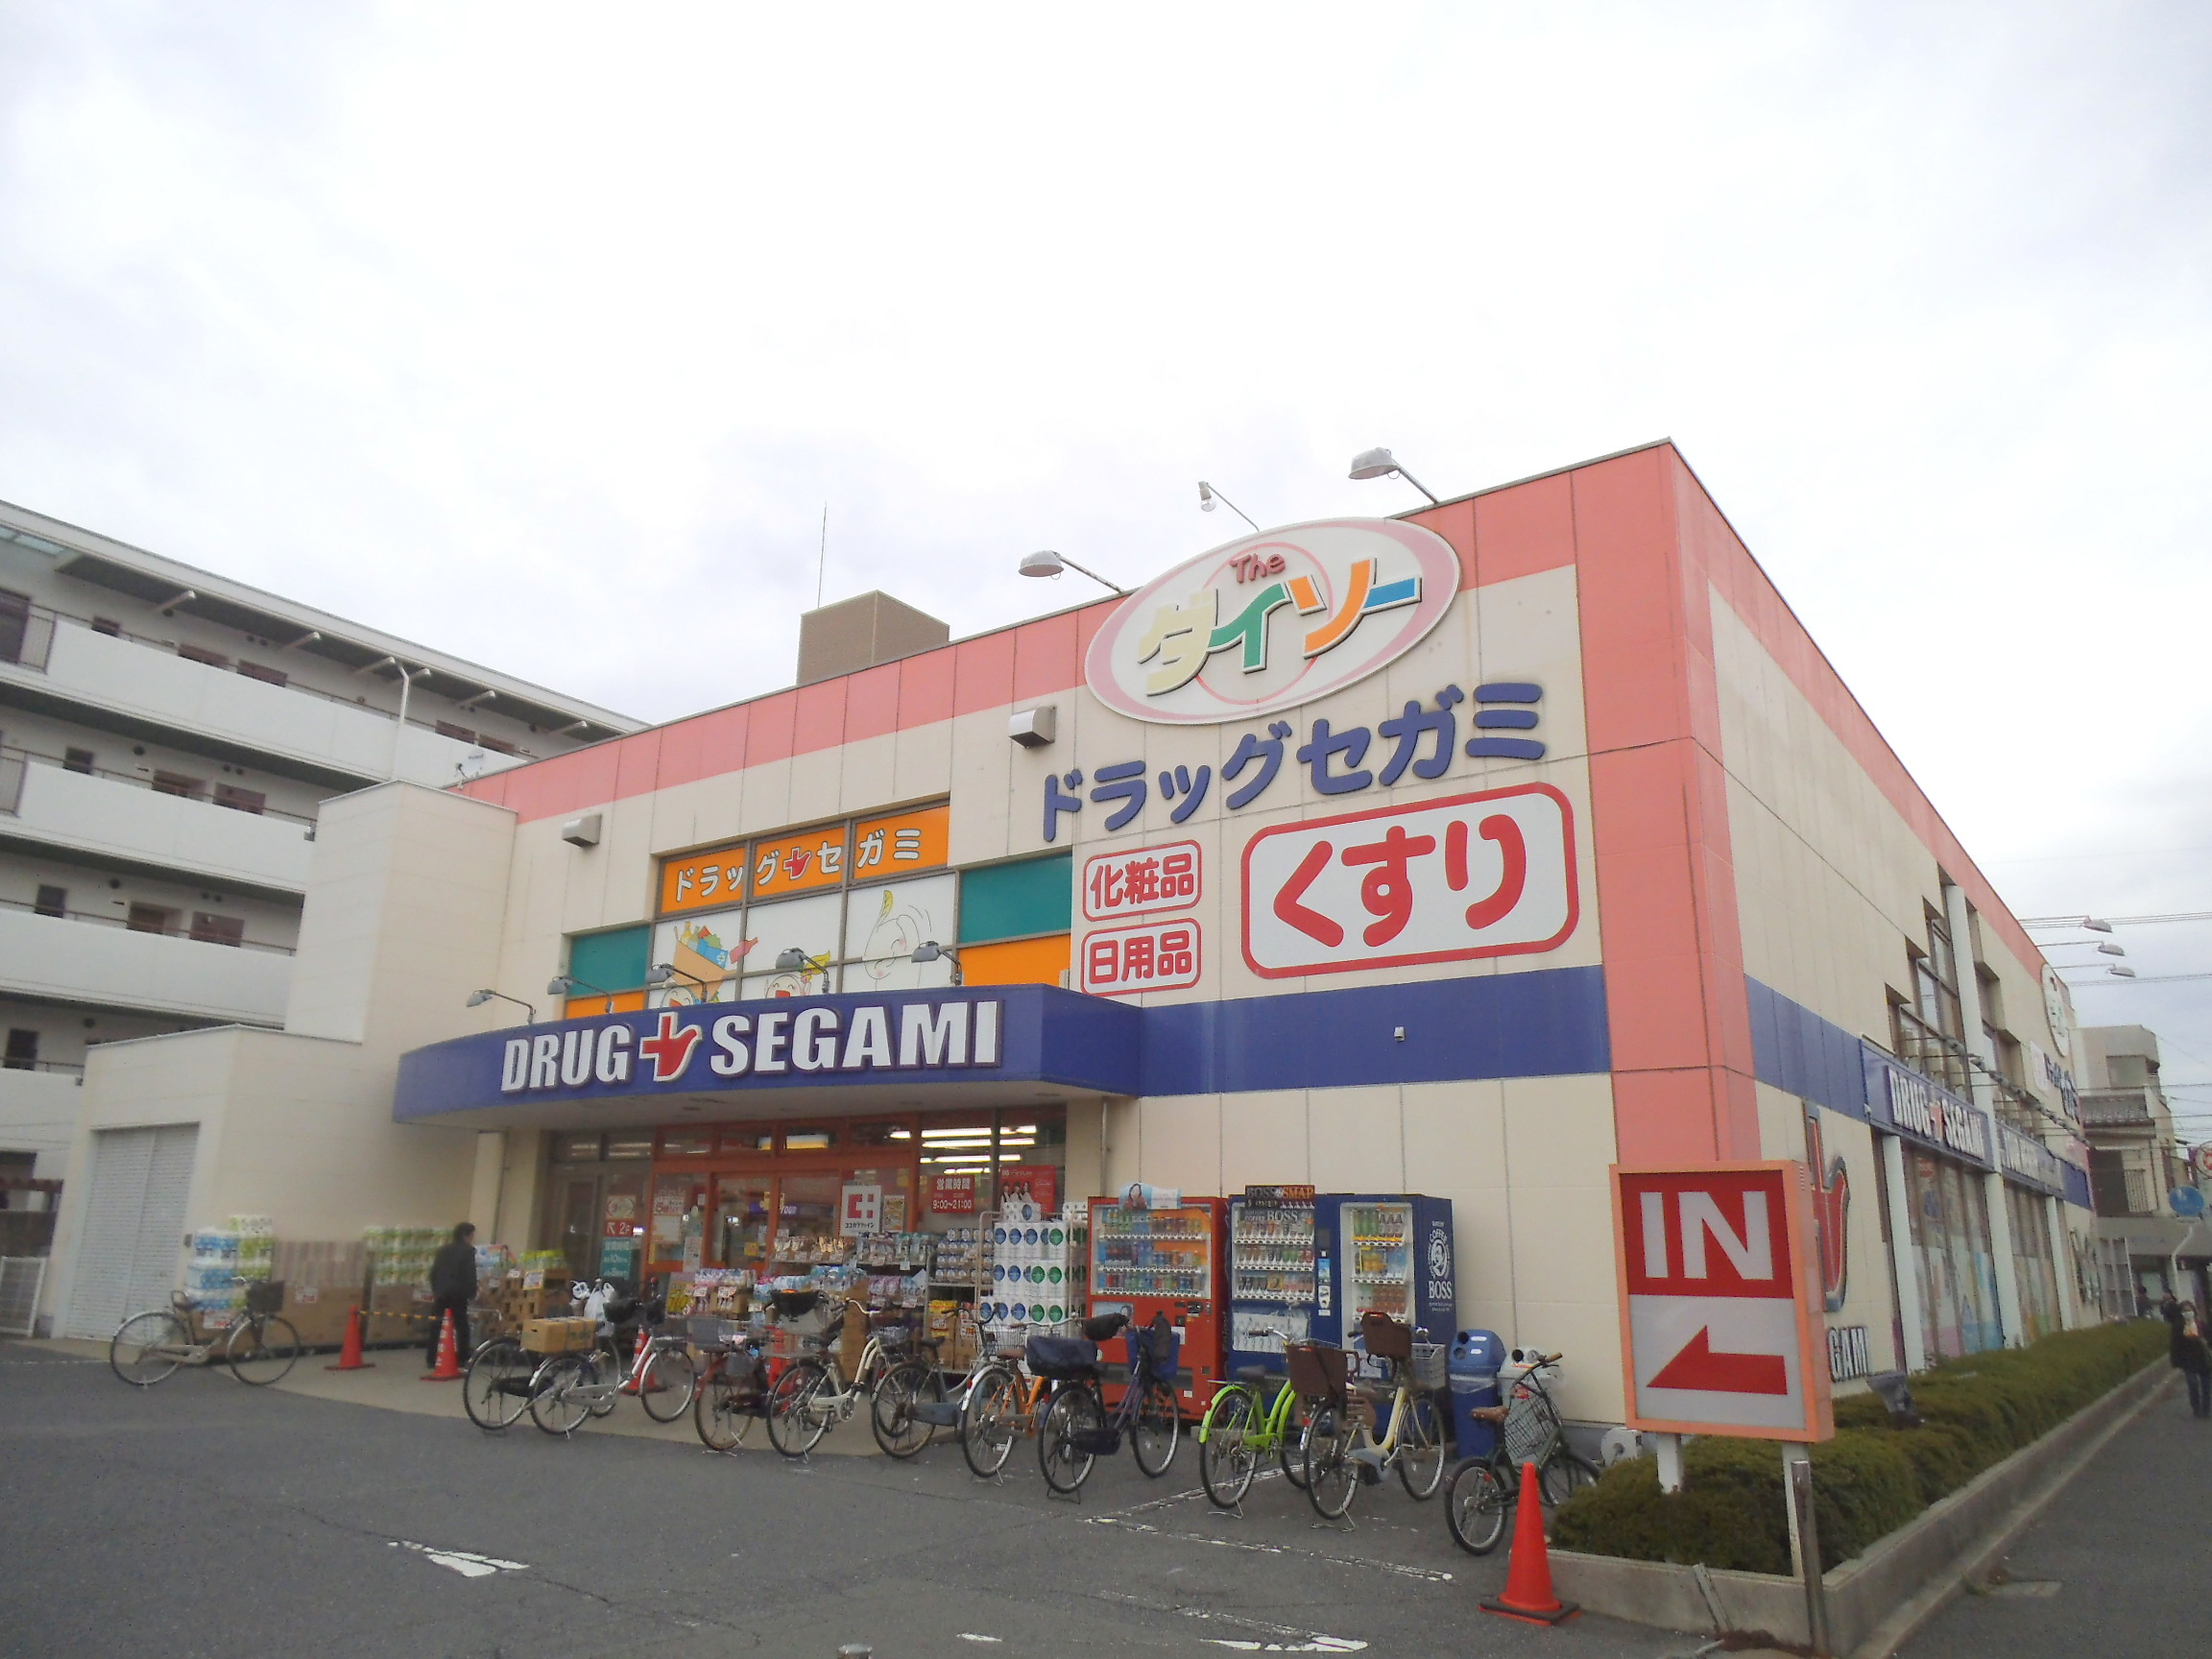 Dorakkusutoa. Drag Segami Shinonome store 265m to (drugstore)